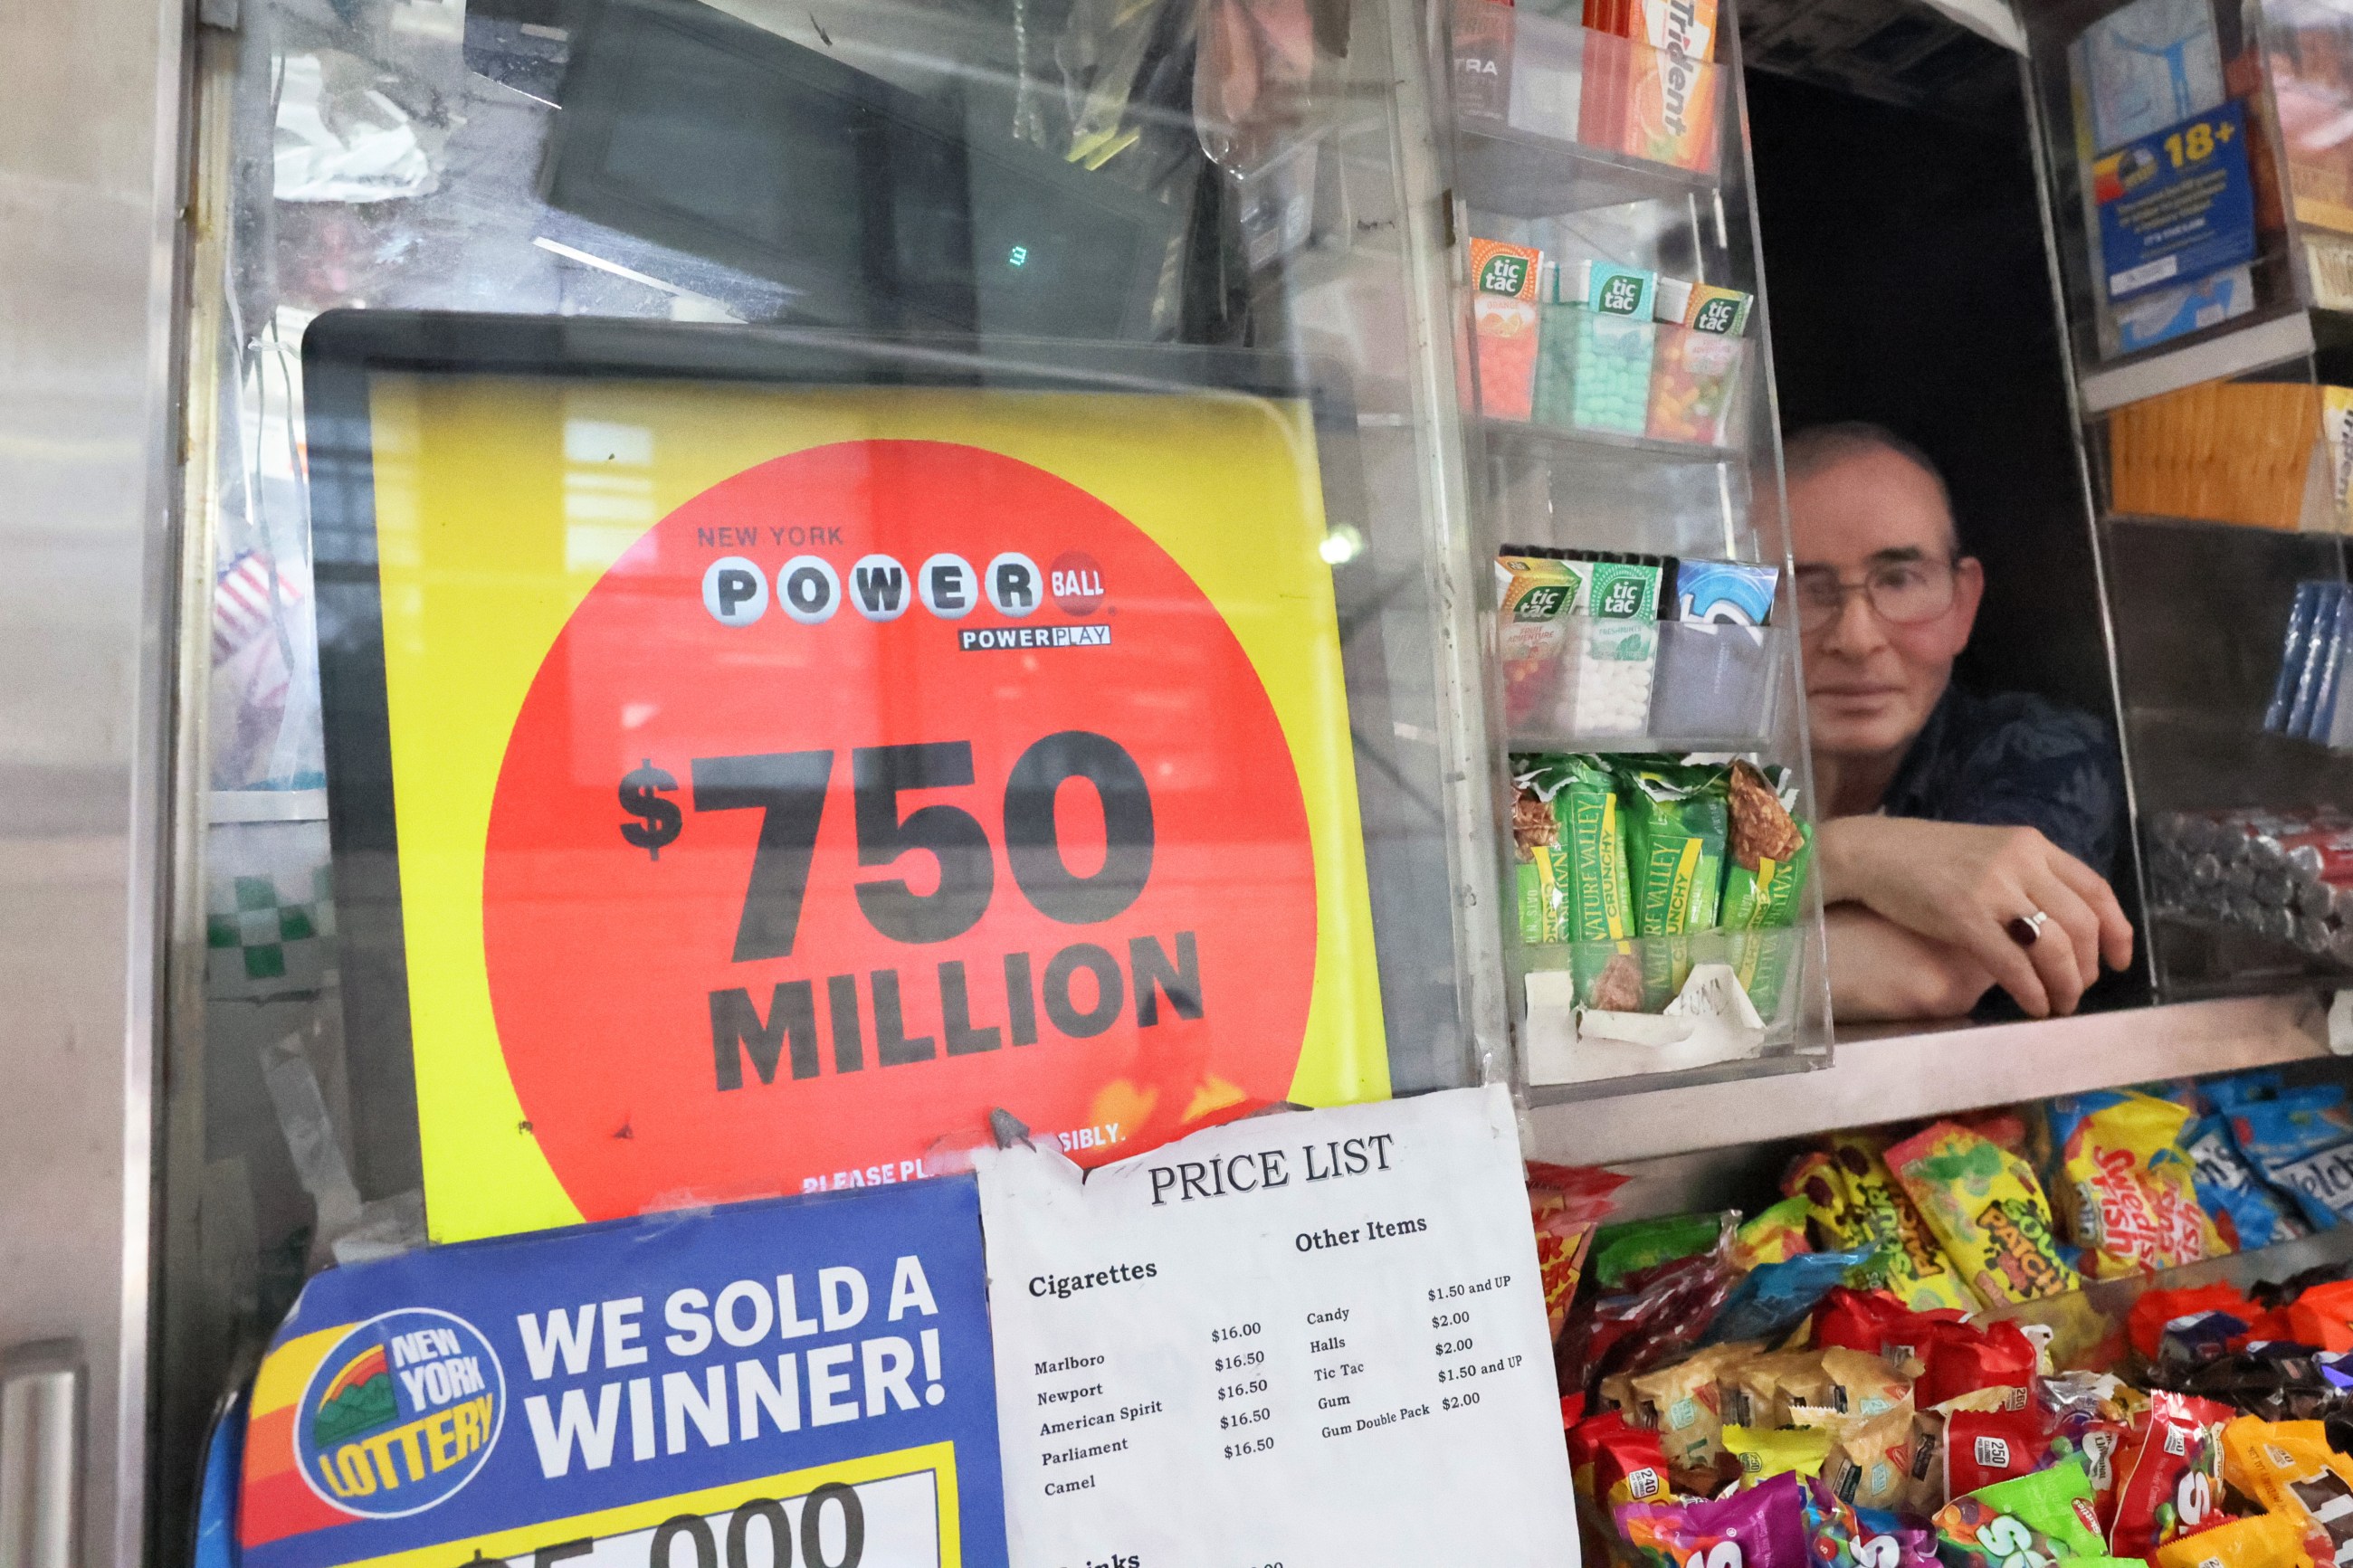 ¿Cómo ganar la Lotería? Los trucos de un experto para minimizar el ‘factor suerte’